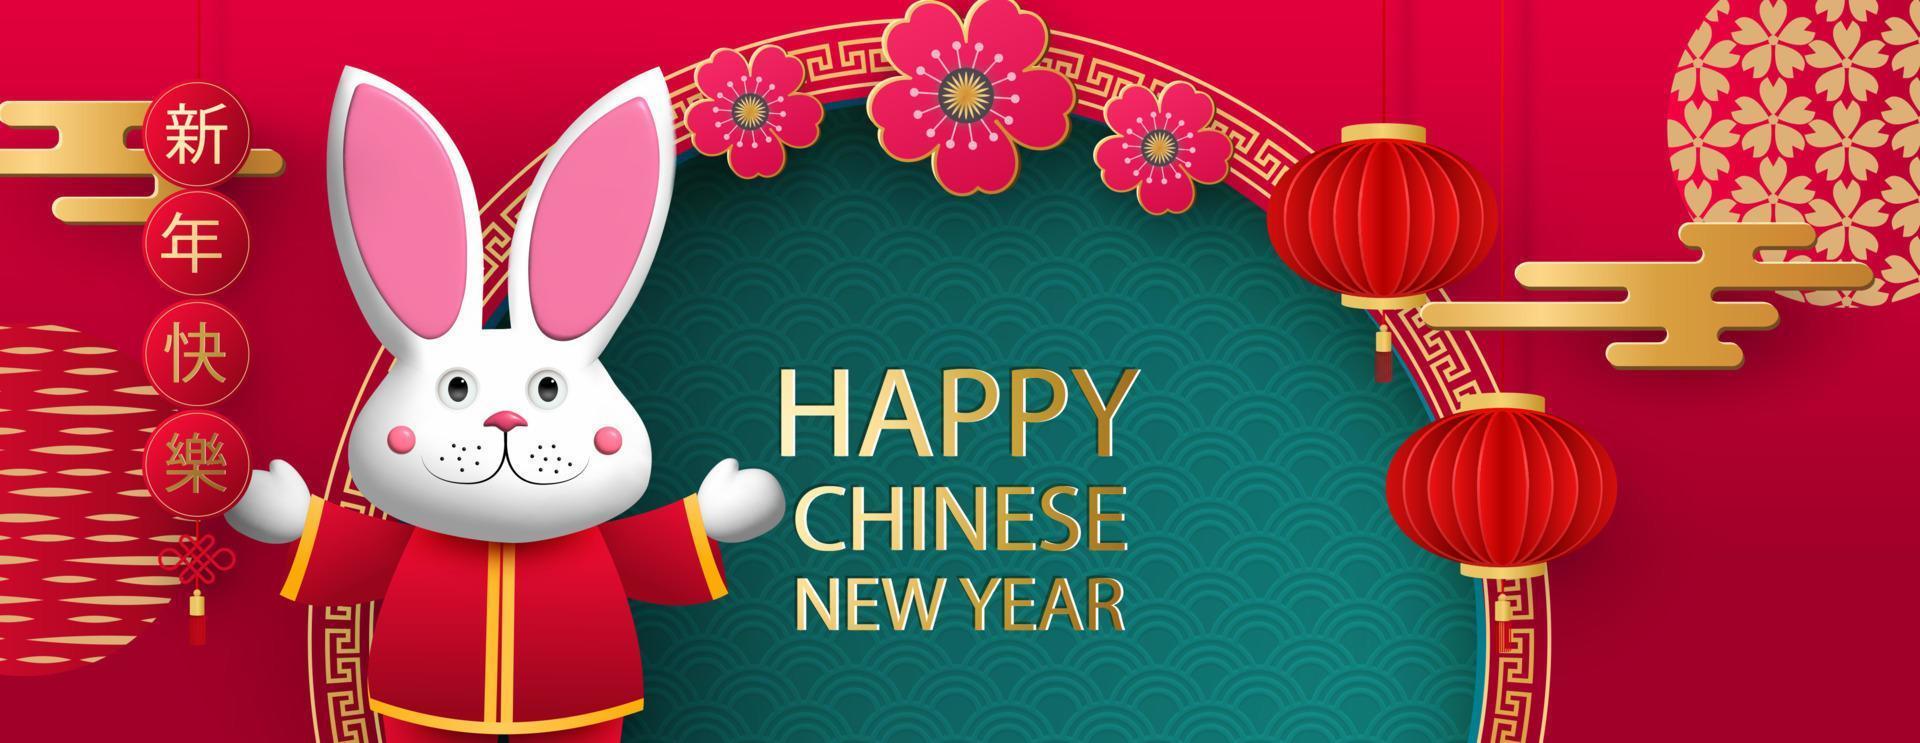 joyeux nouvel an chinois 2023, année du lapin. figurine de lapin sur fond d'éléments et de motifs asiatiques traditionnels. traduction du chinois - bonne année, signe du zodiaque lapin. vecteur